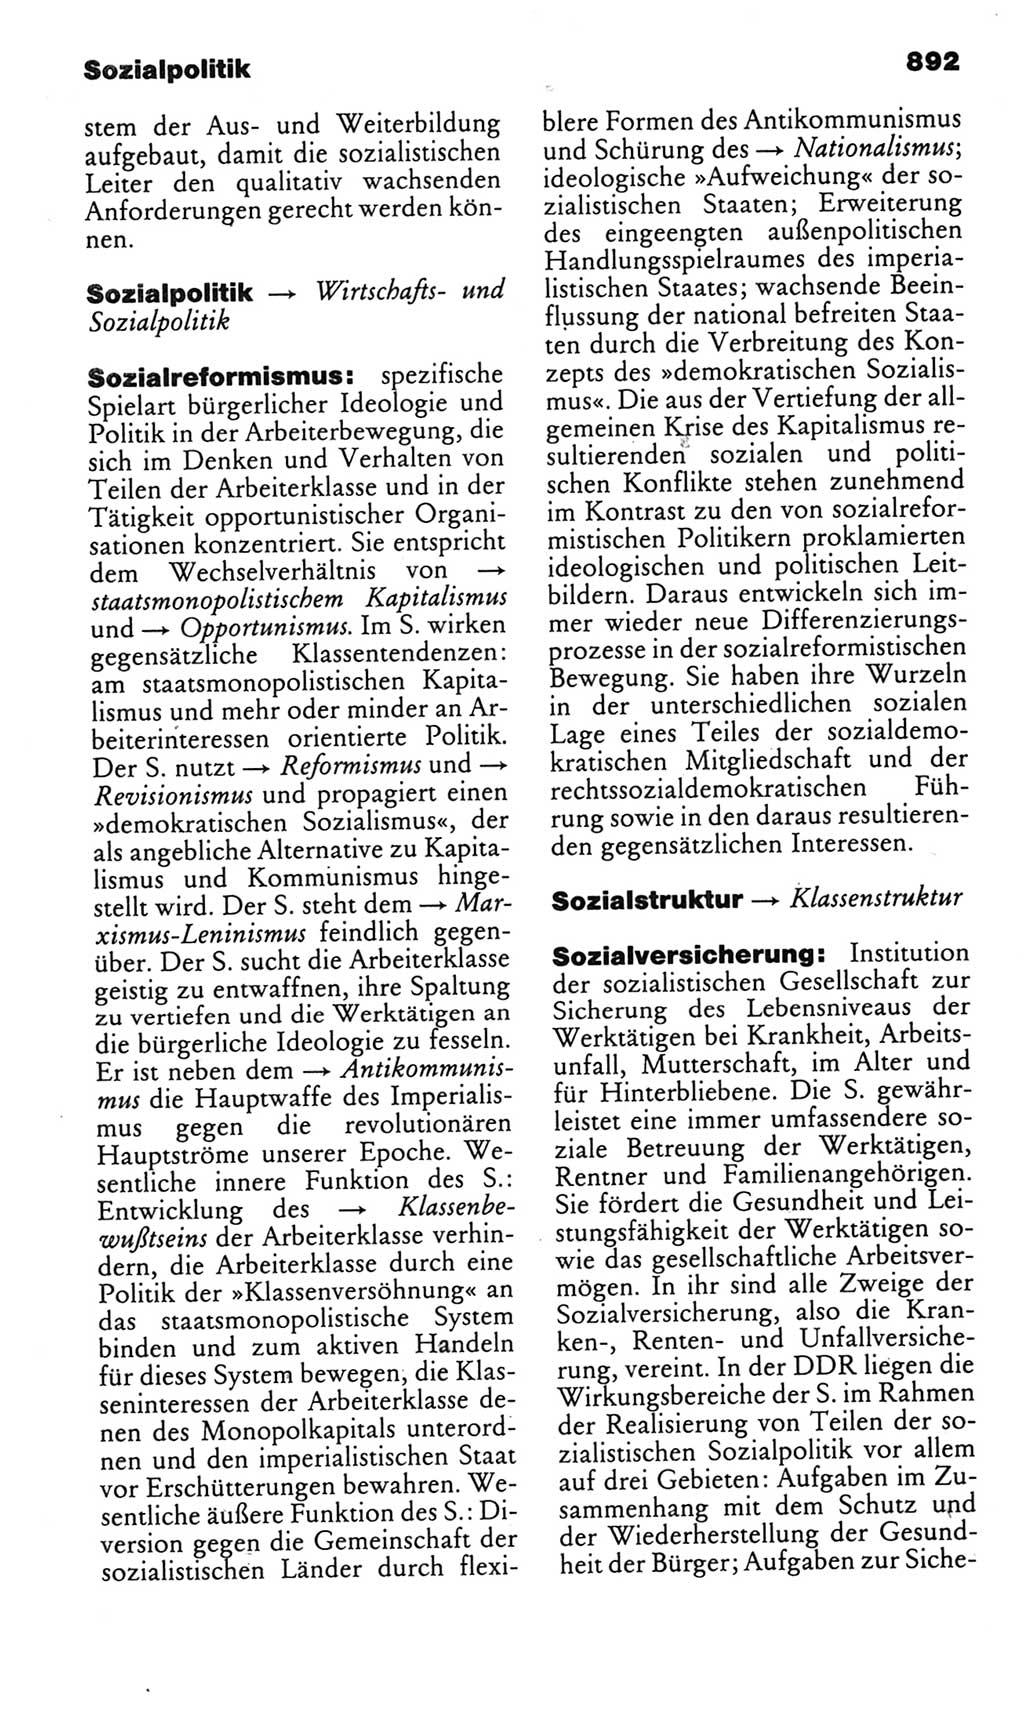 Kleines politisches Wörterbuch [Deutsche Demokratische Republik (DDR)] 1985, Seite 892 (Kl. pol. Wb. DDR 1985, S. 892)